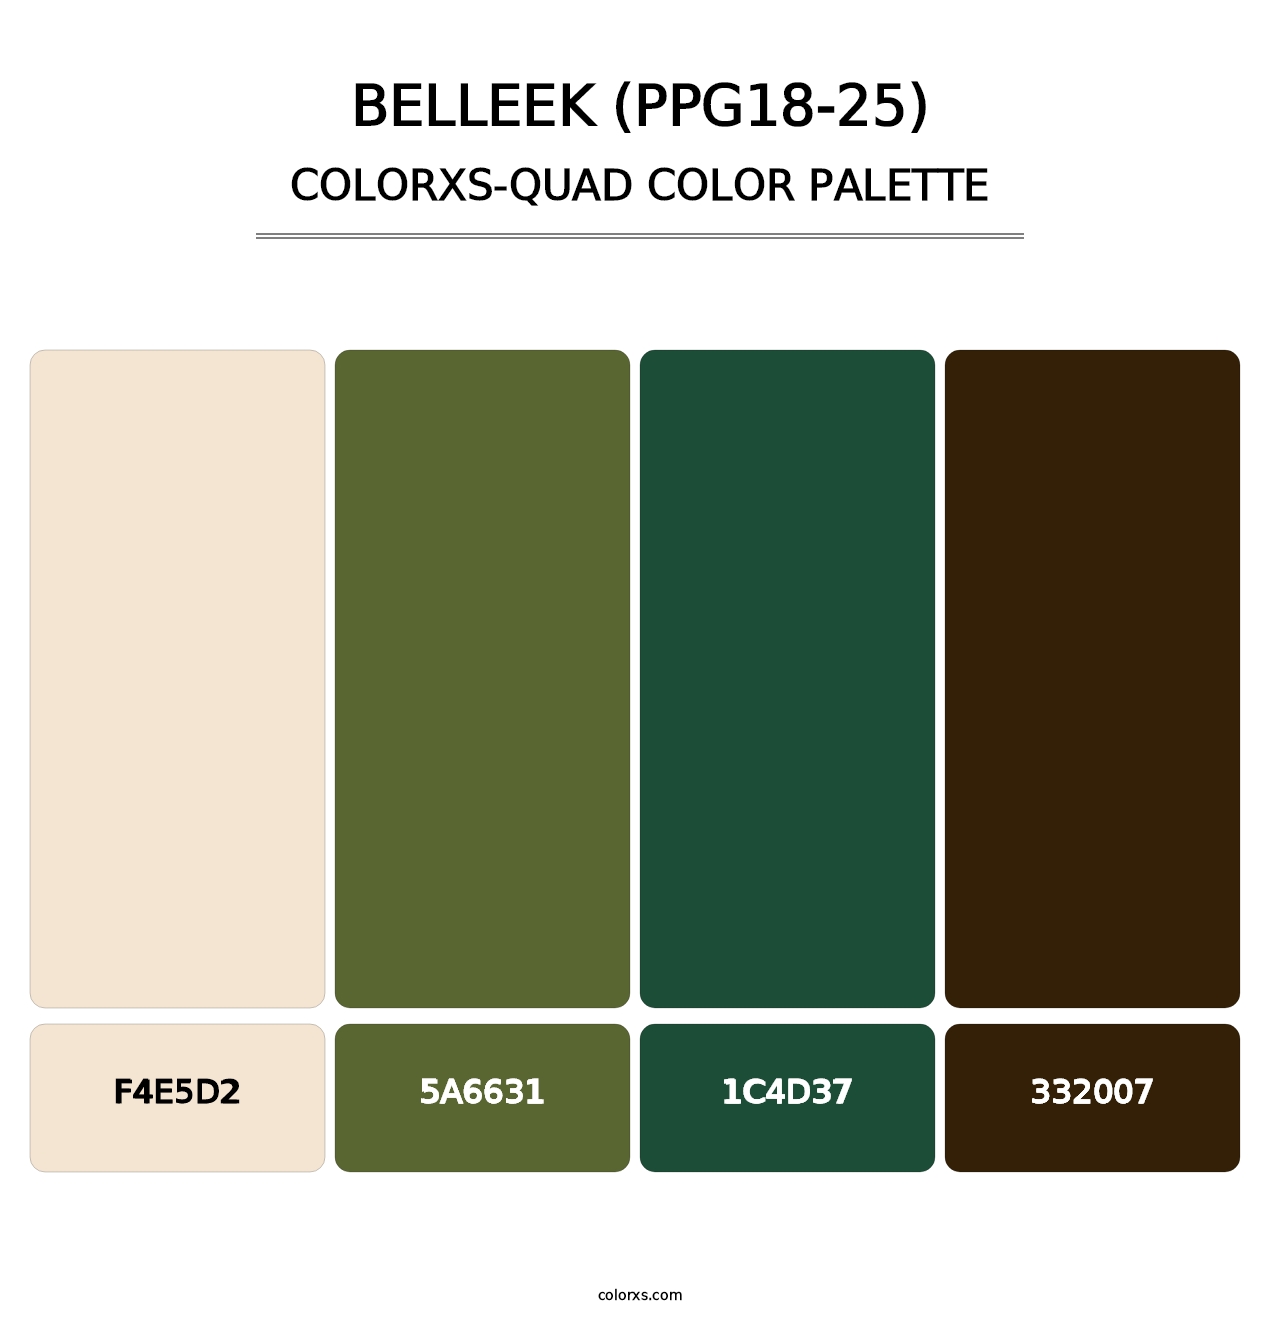 Belleek (PPG18-25) - Colorxs Quad Palette